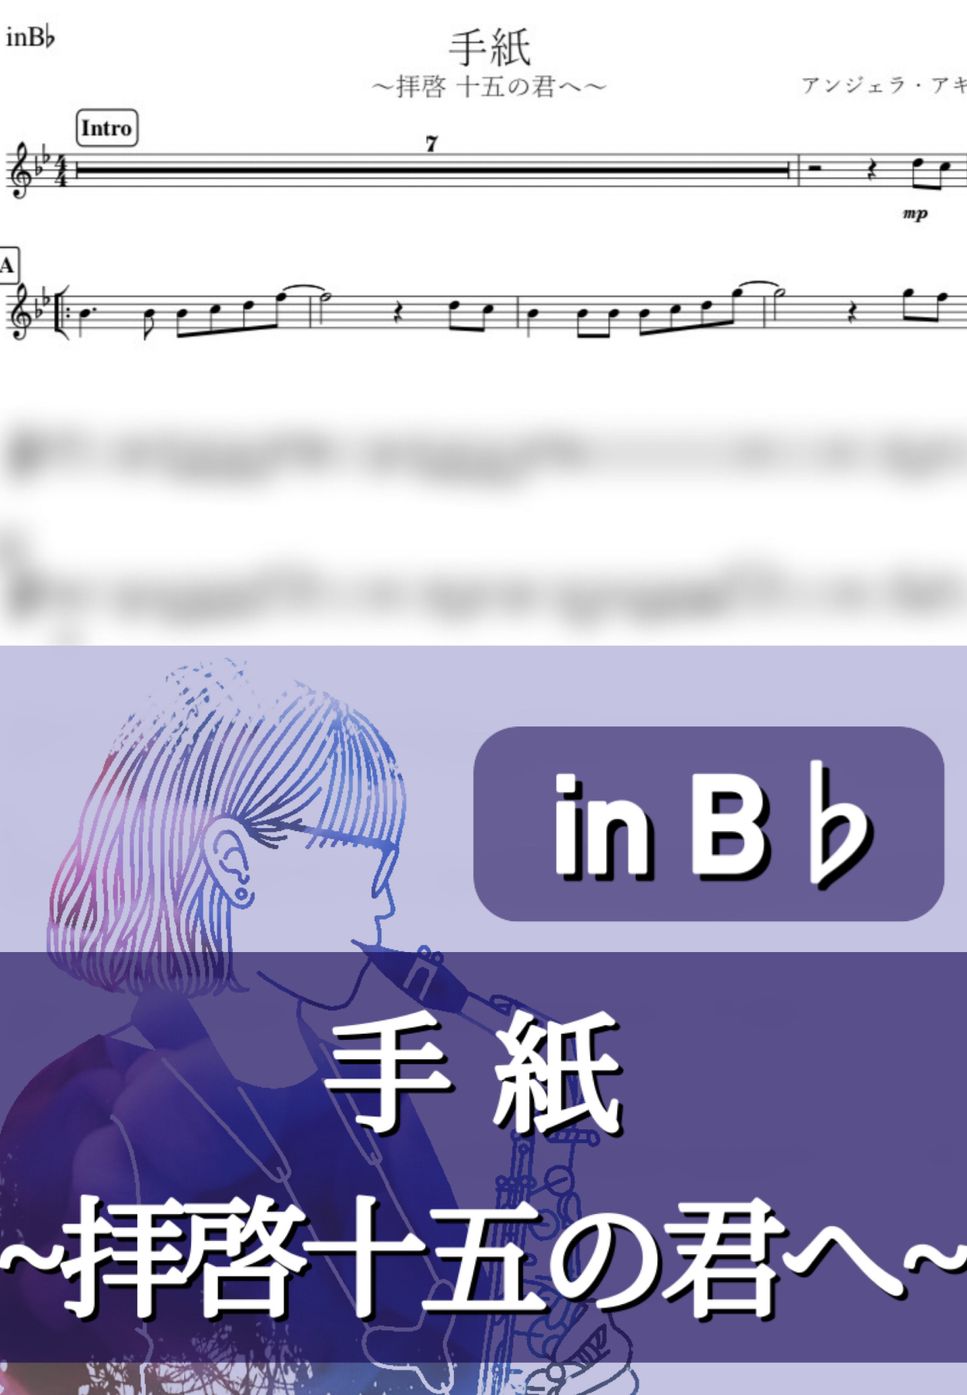 アンジェラ・アキ - 手紙 (B♭) by kanamusic